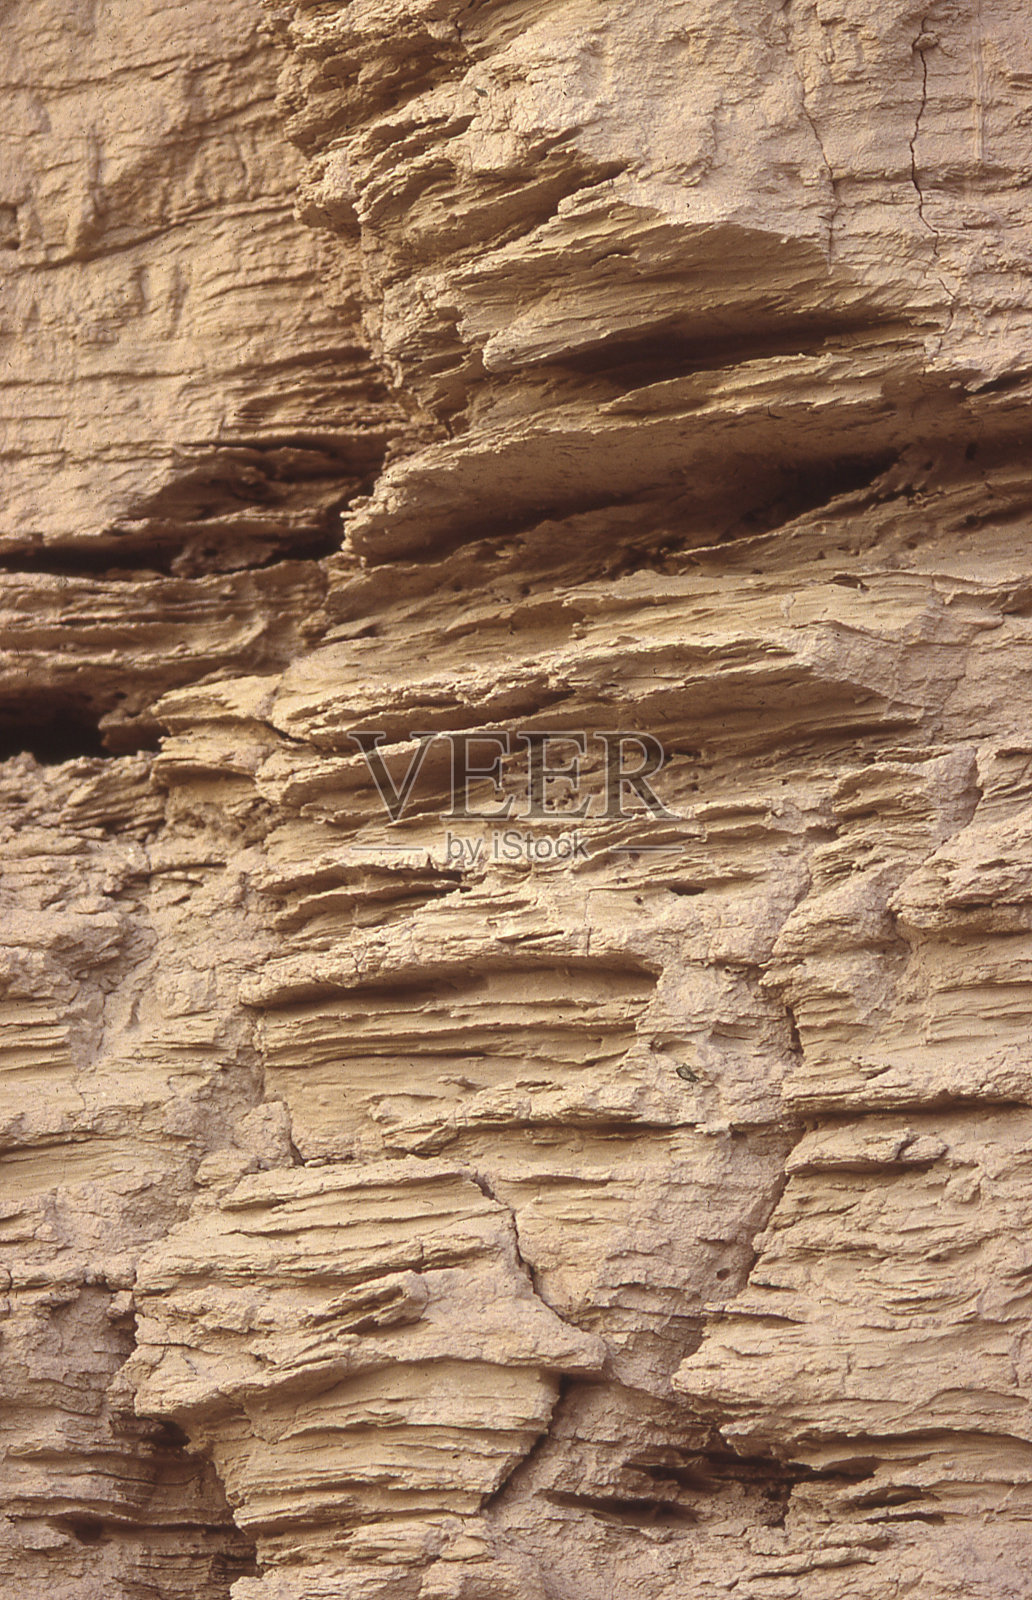 喷砂墙古墙汉代定居中国新疆照片摄影图片